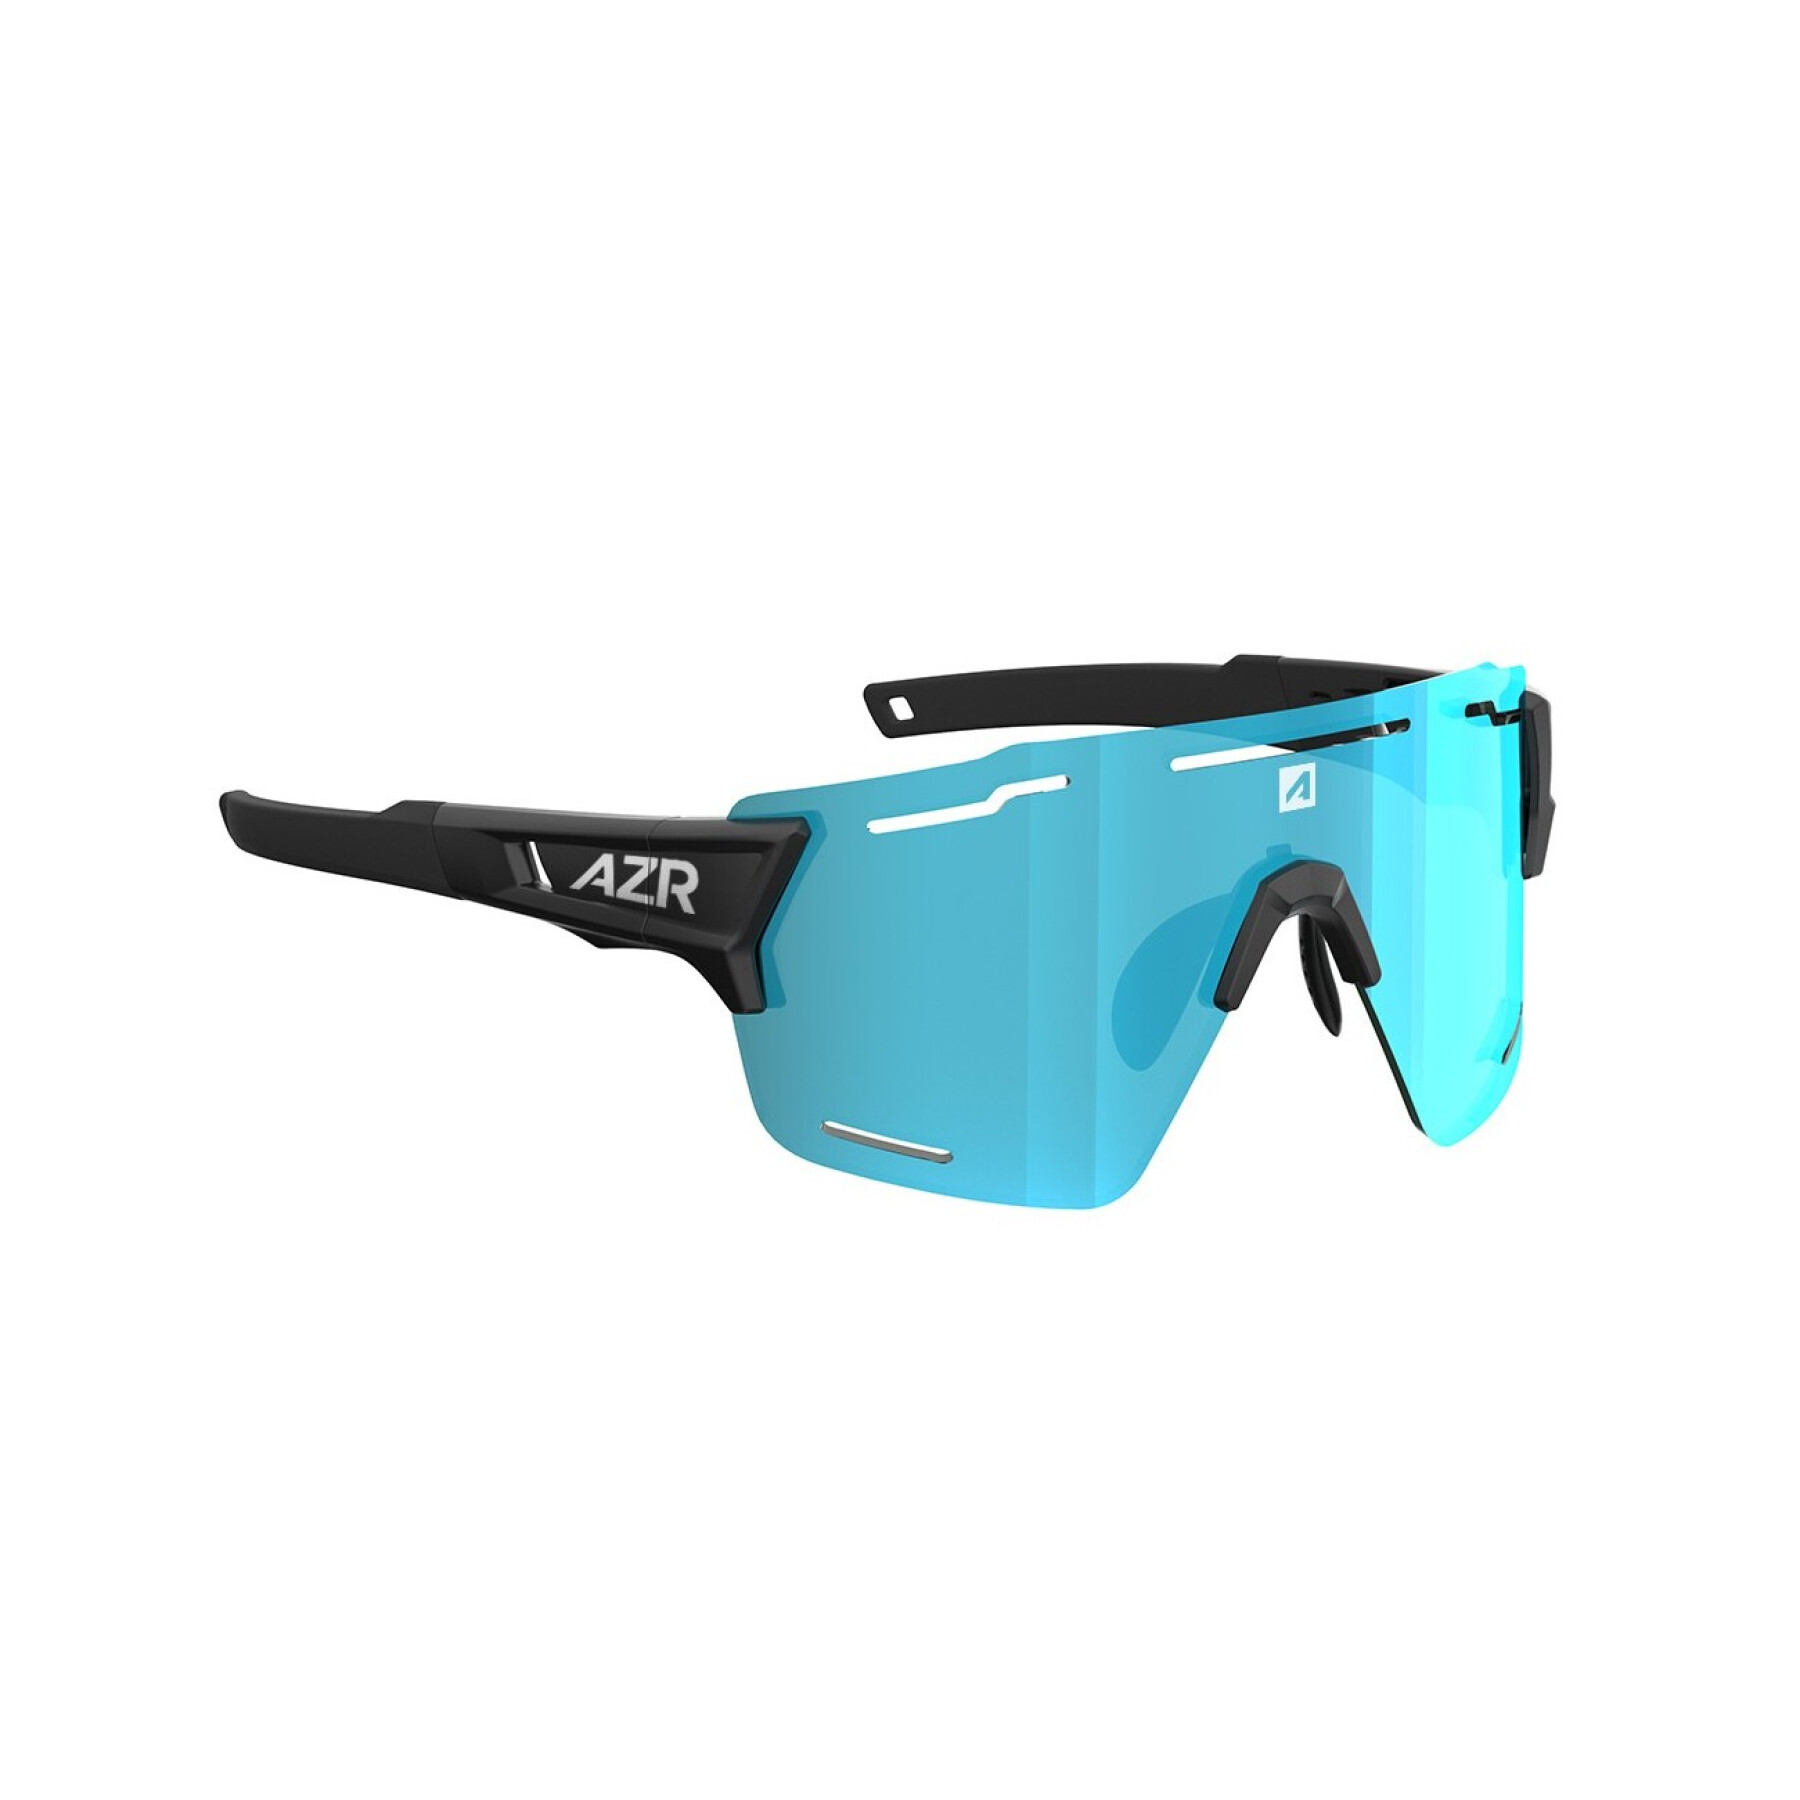 Sunglasses AZR Pro Aspin 2 RX